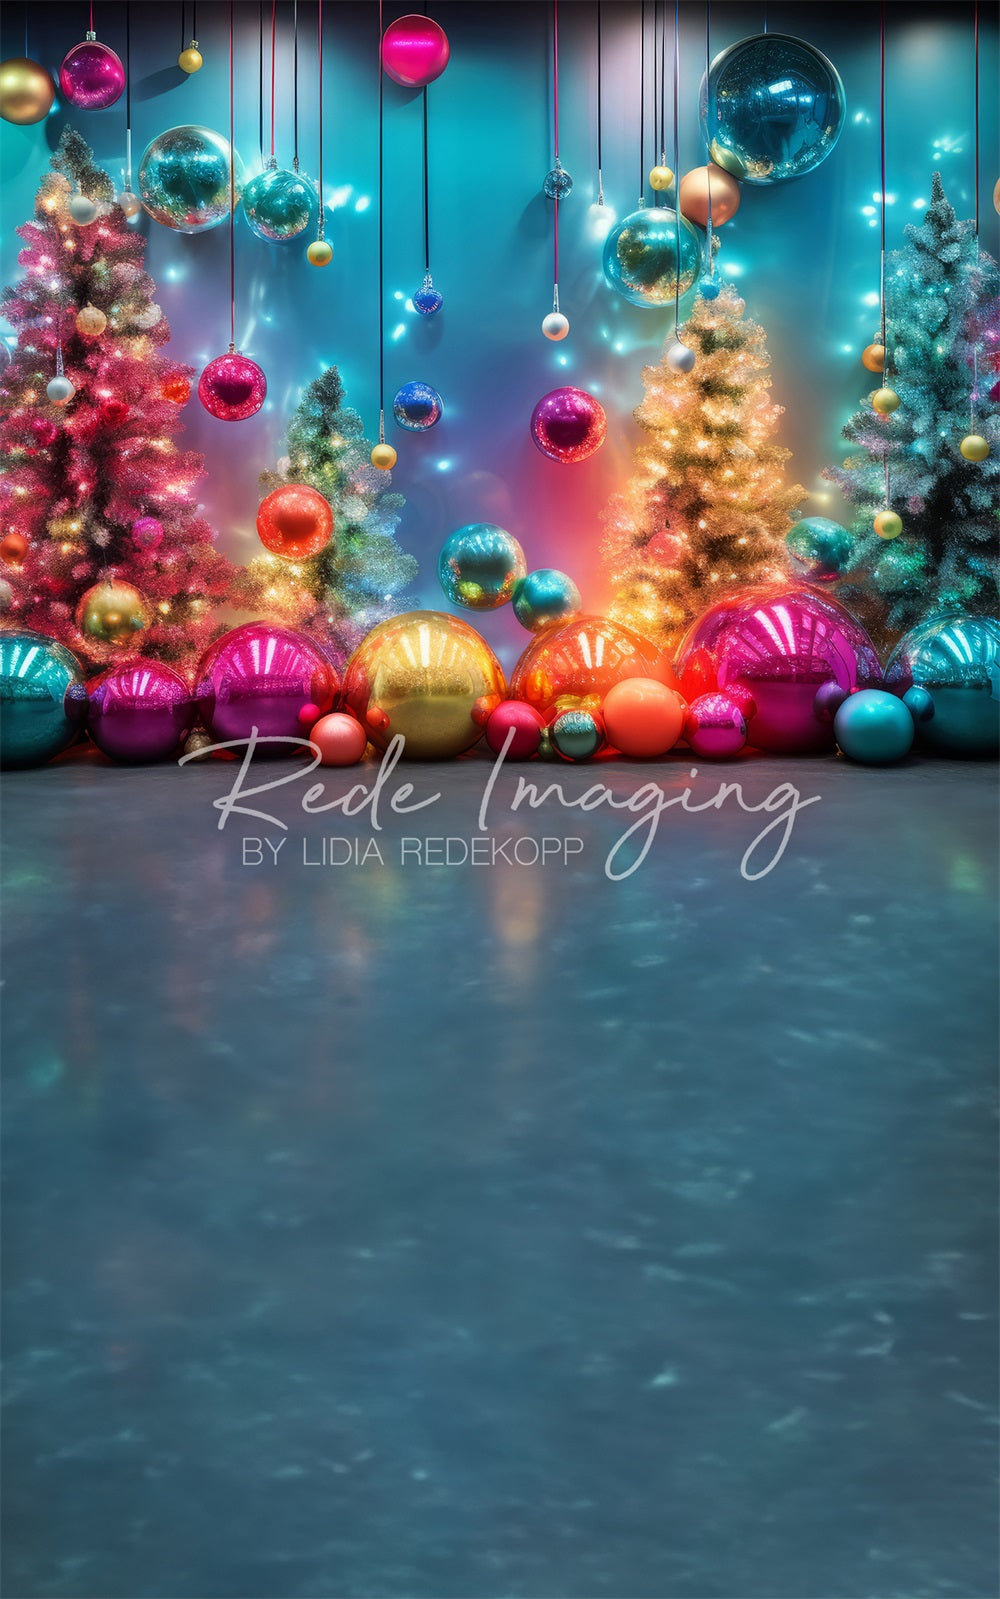 Sweep Neon Glow Kerstdecor Ontworpen door Lidia Redekopp